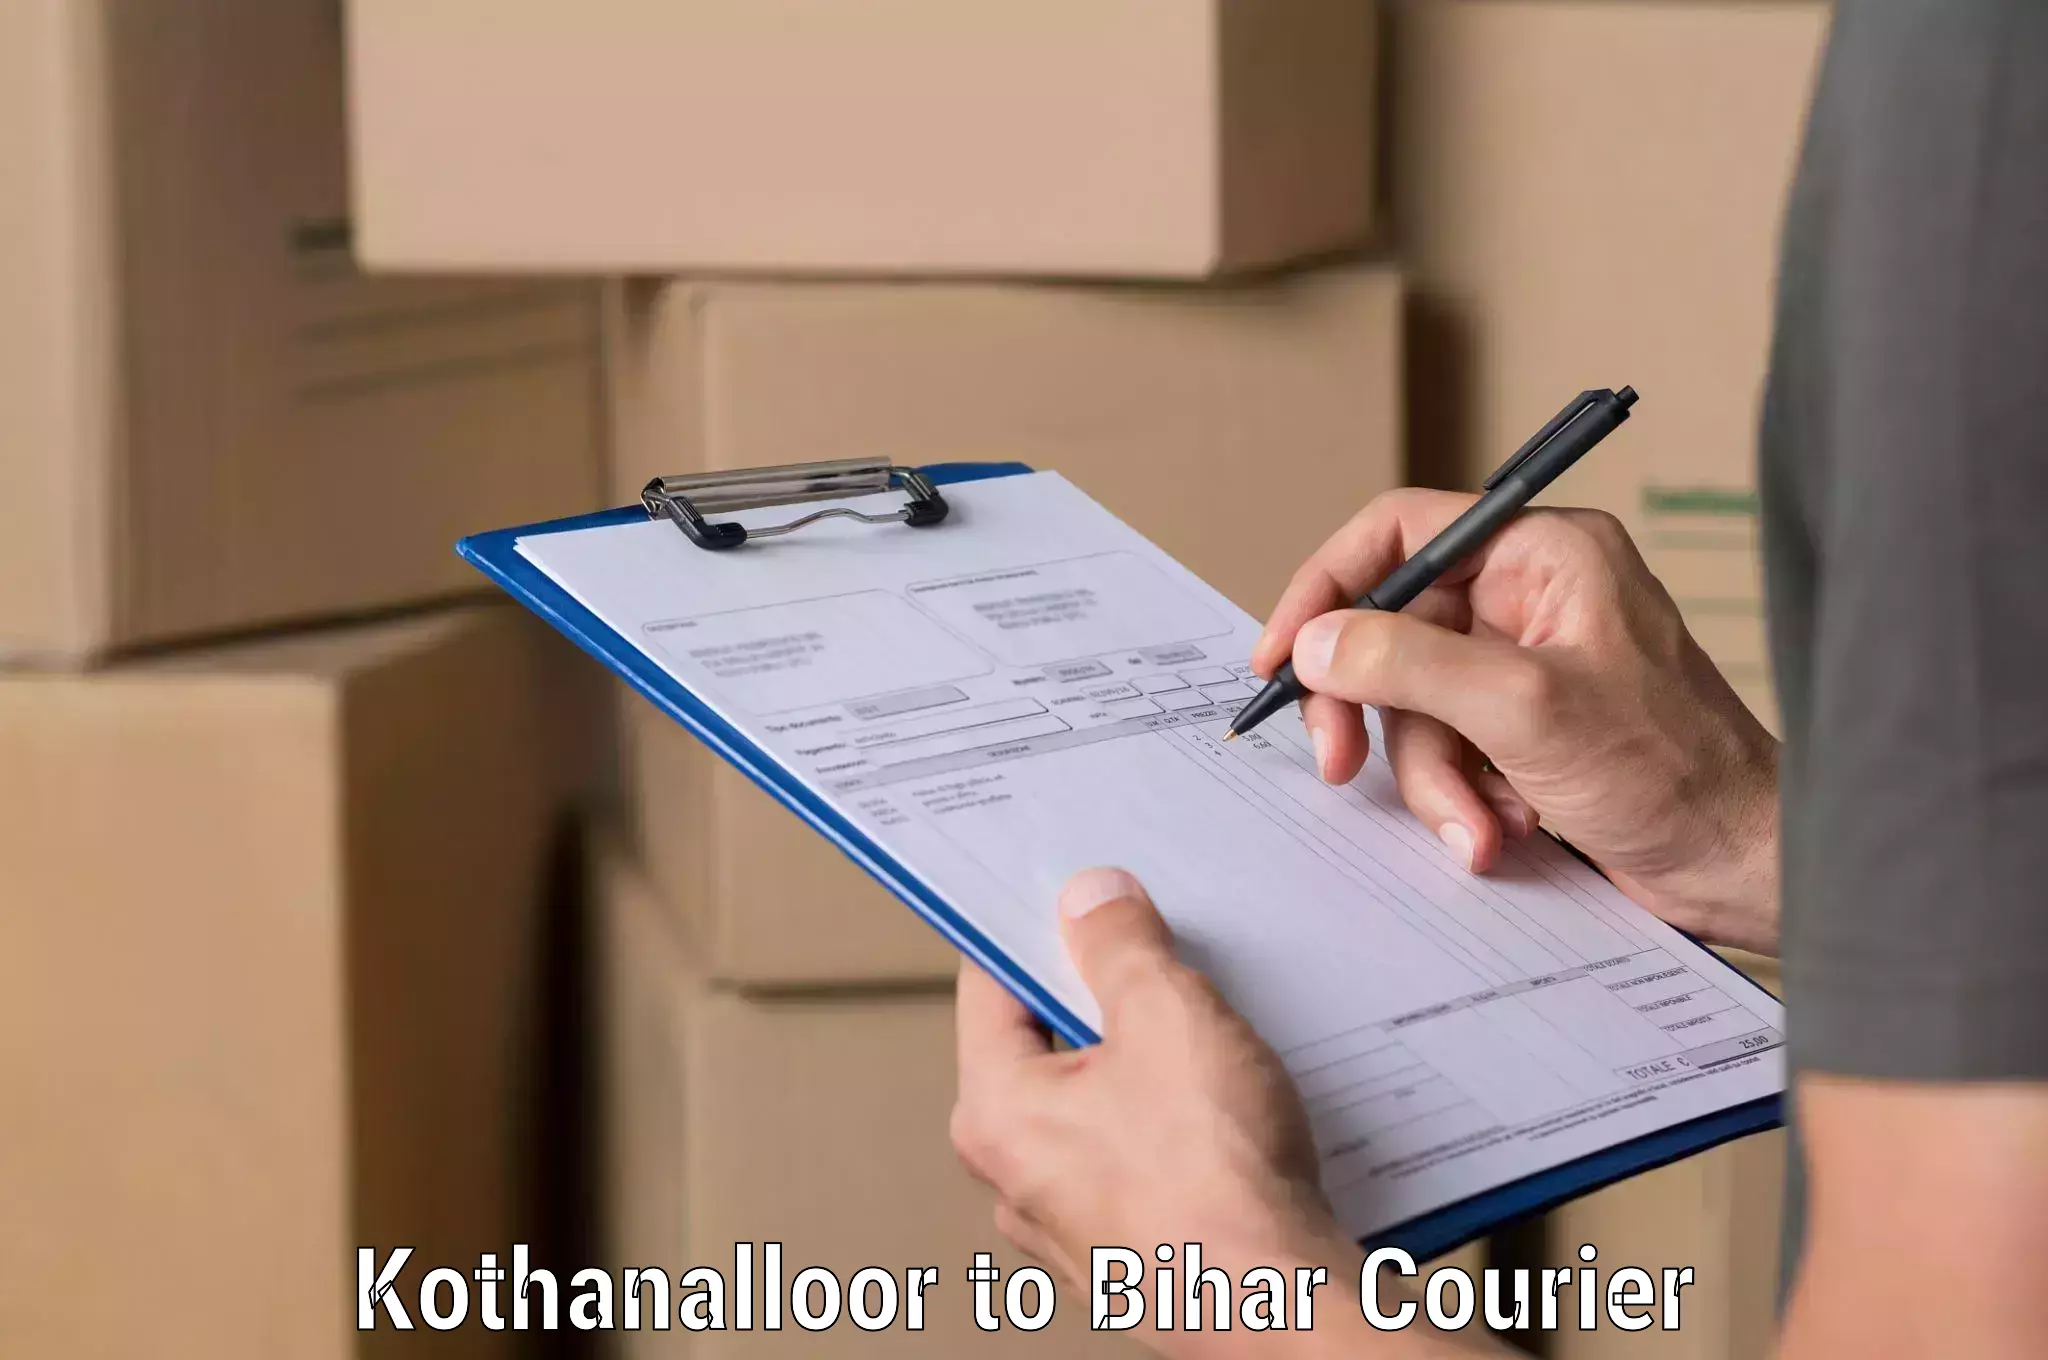 Door-to-door freight service Kothanalloor to Sonbarsa